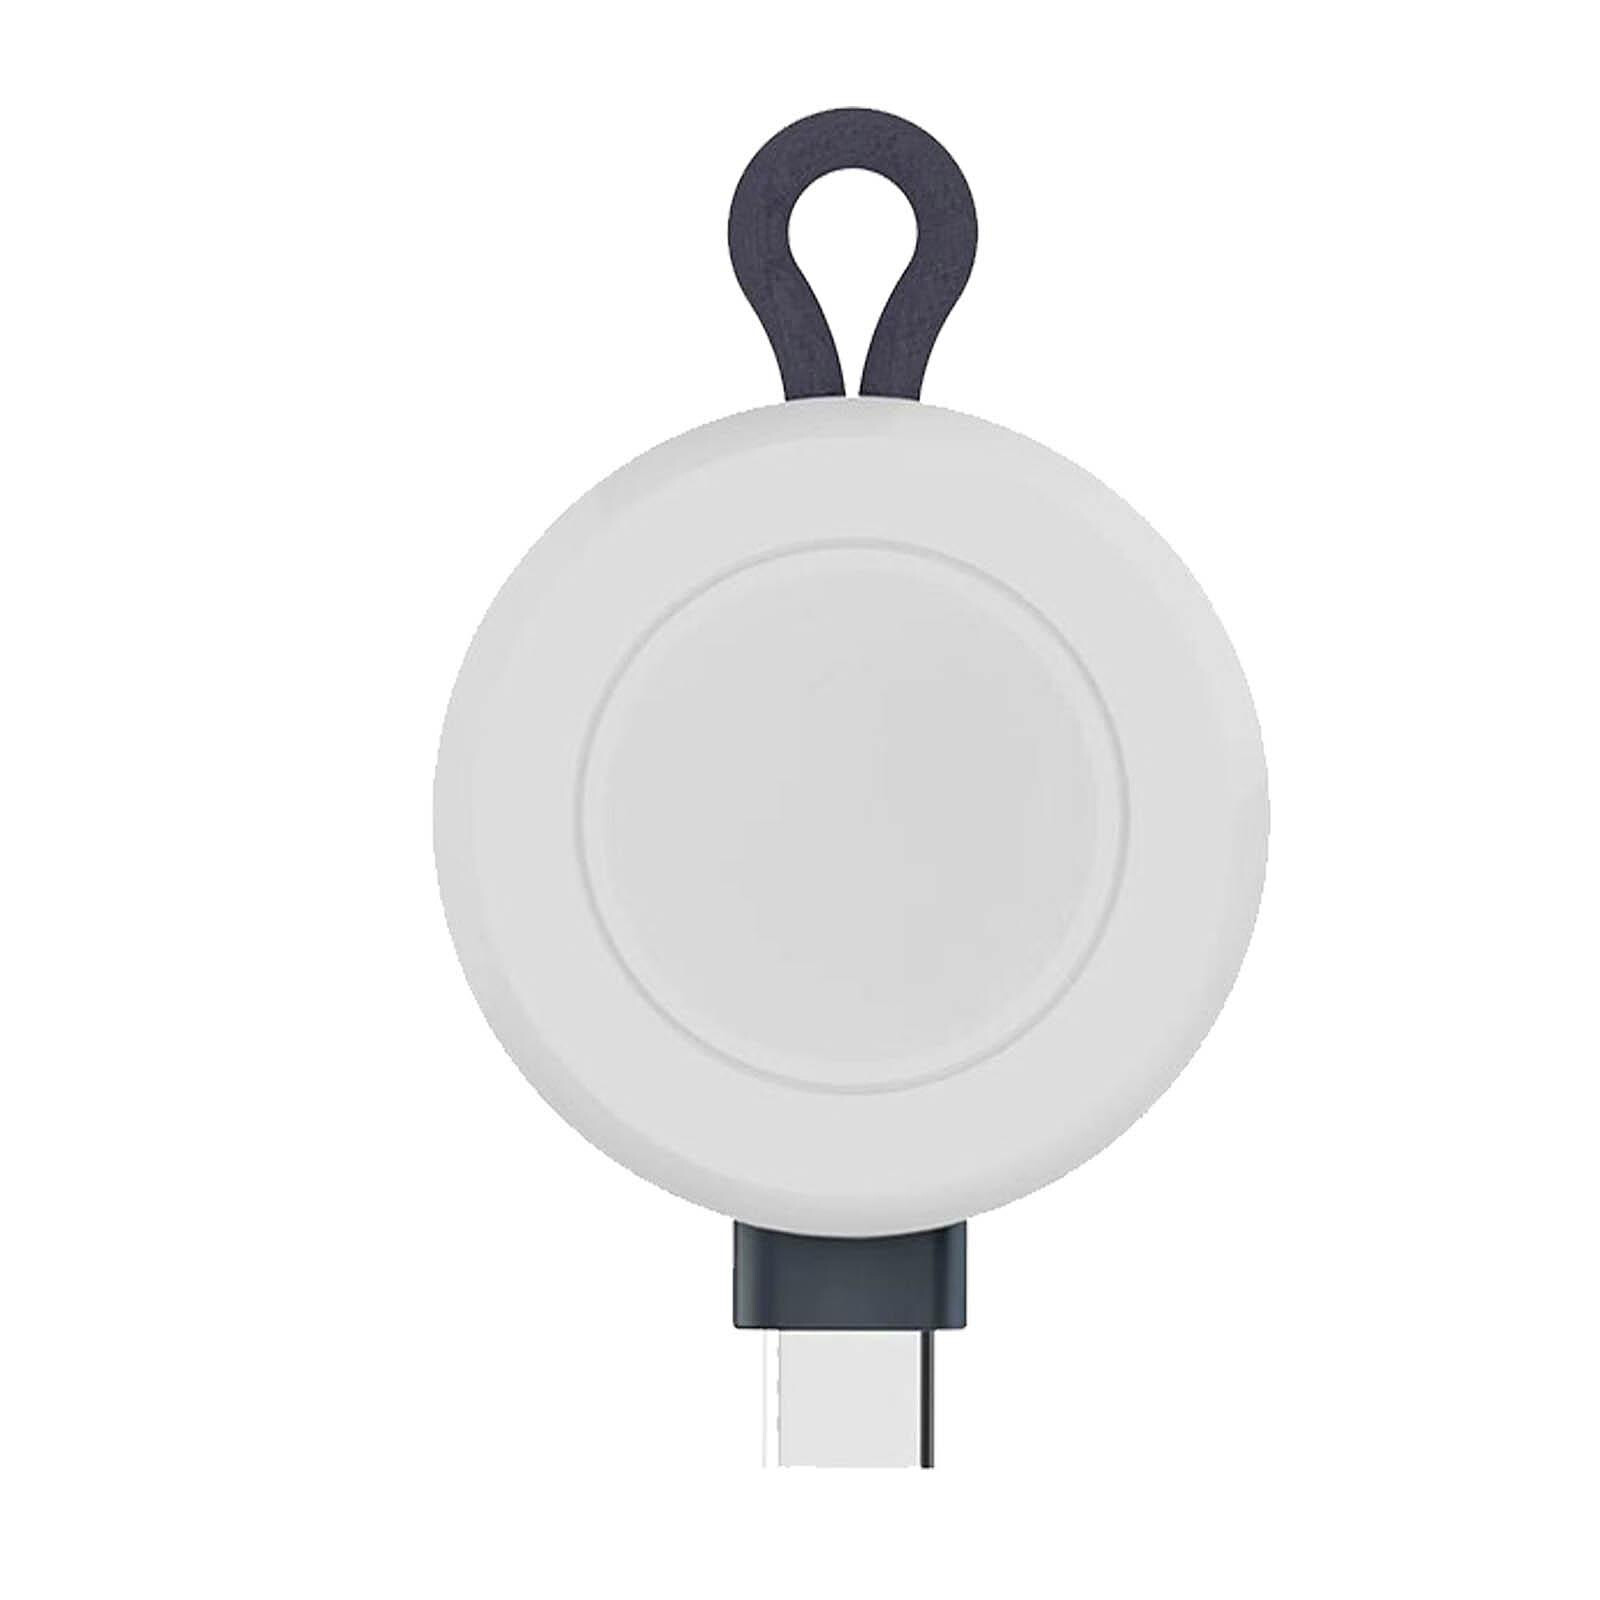 Avizar Câble Chargeur magnétique pour Apple Watch Charge rapide et